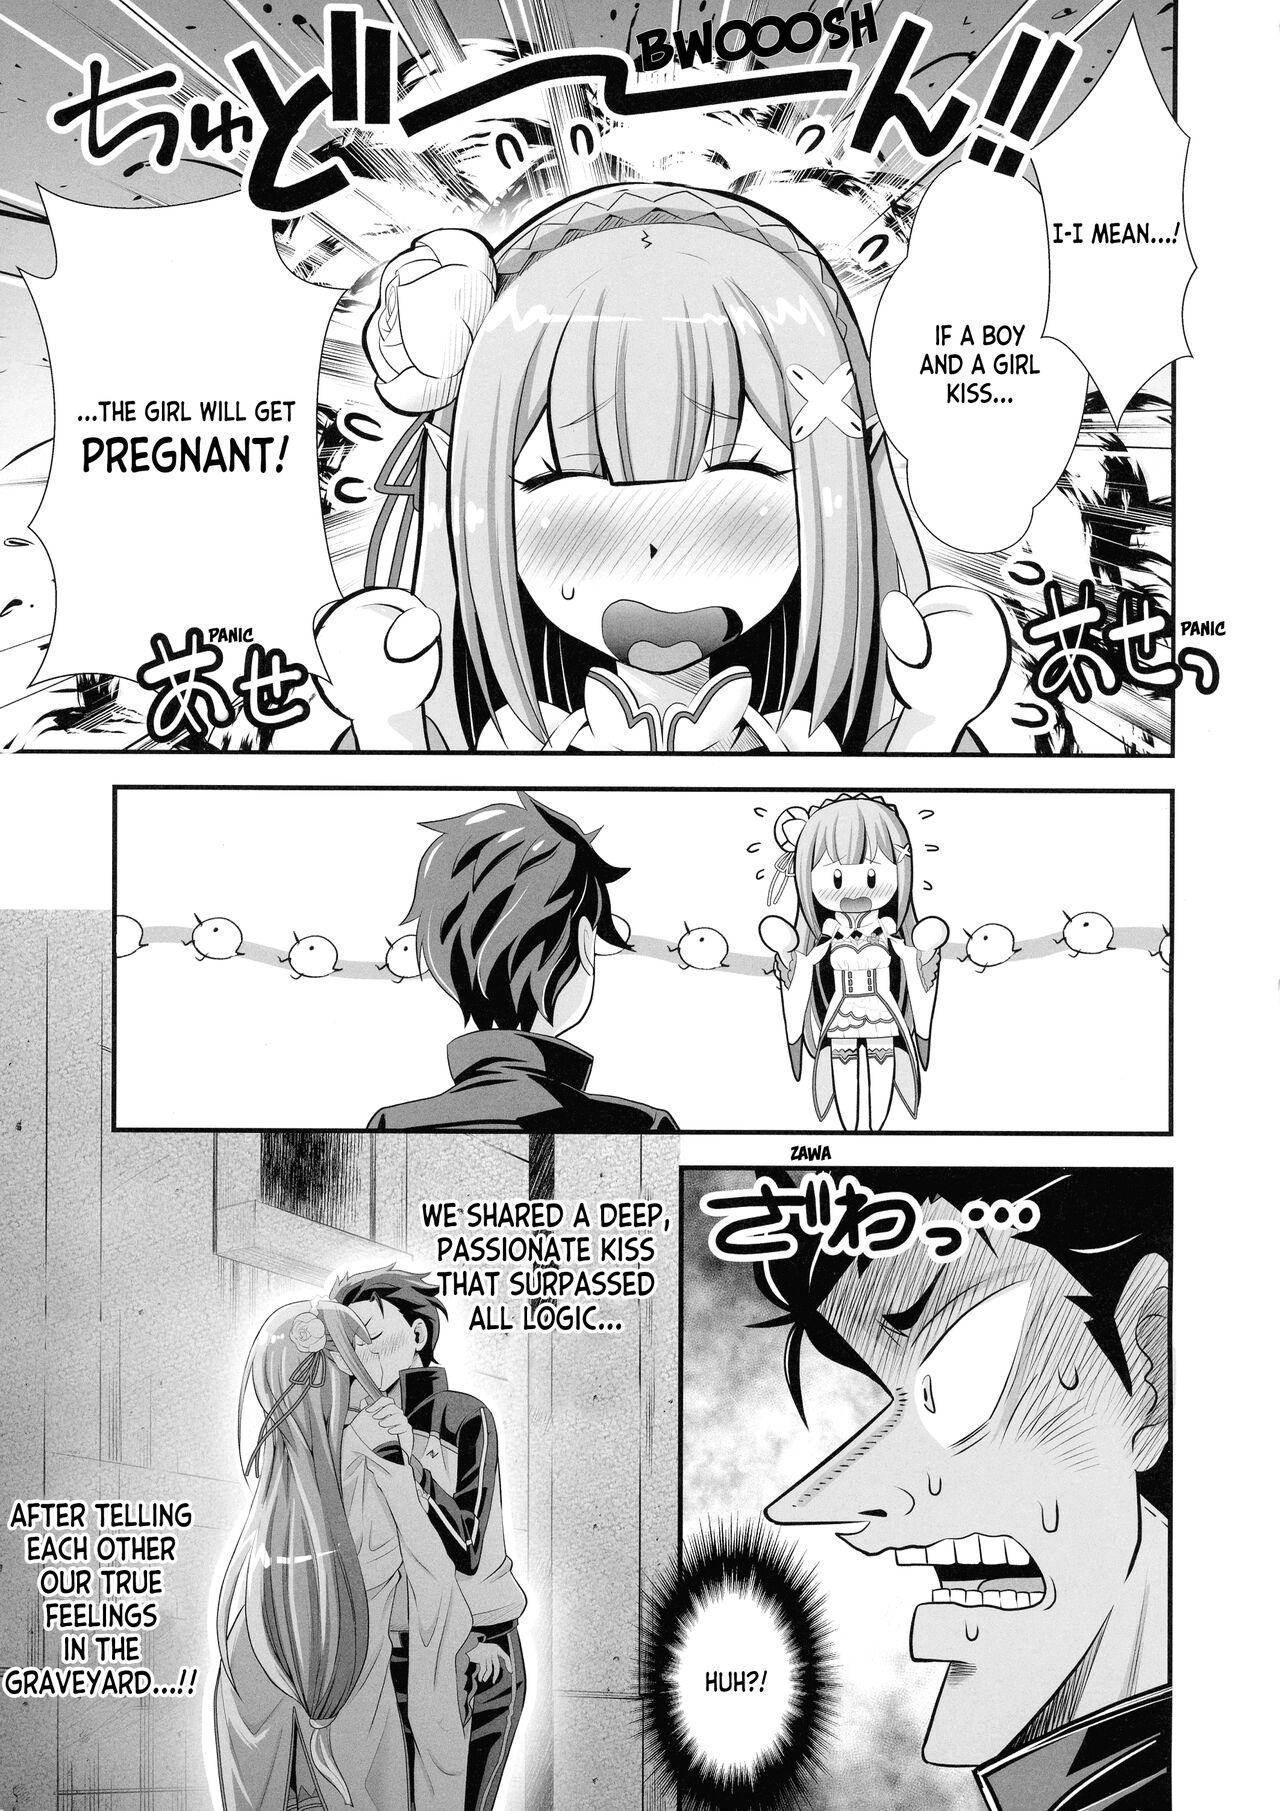 Cumming Re: Zero na Maid-san vol. 3 - Re zero kara hajimeru isekai seikatsu Ecchi - Page 3